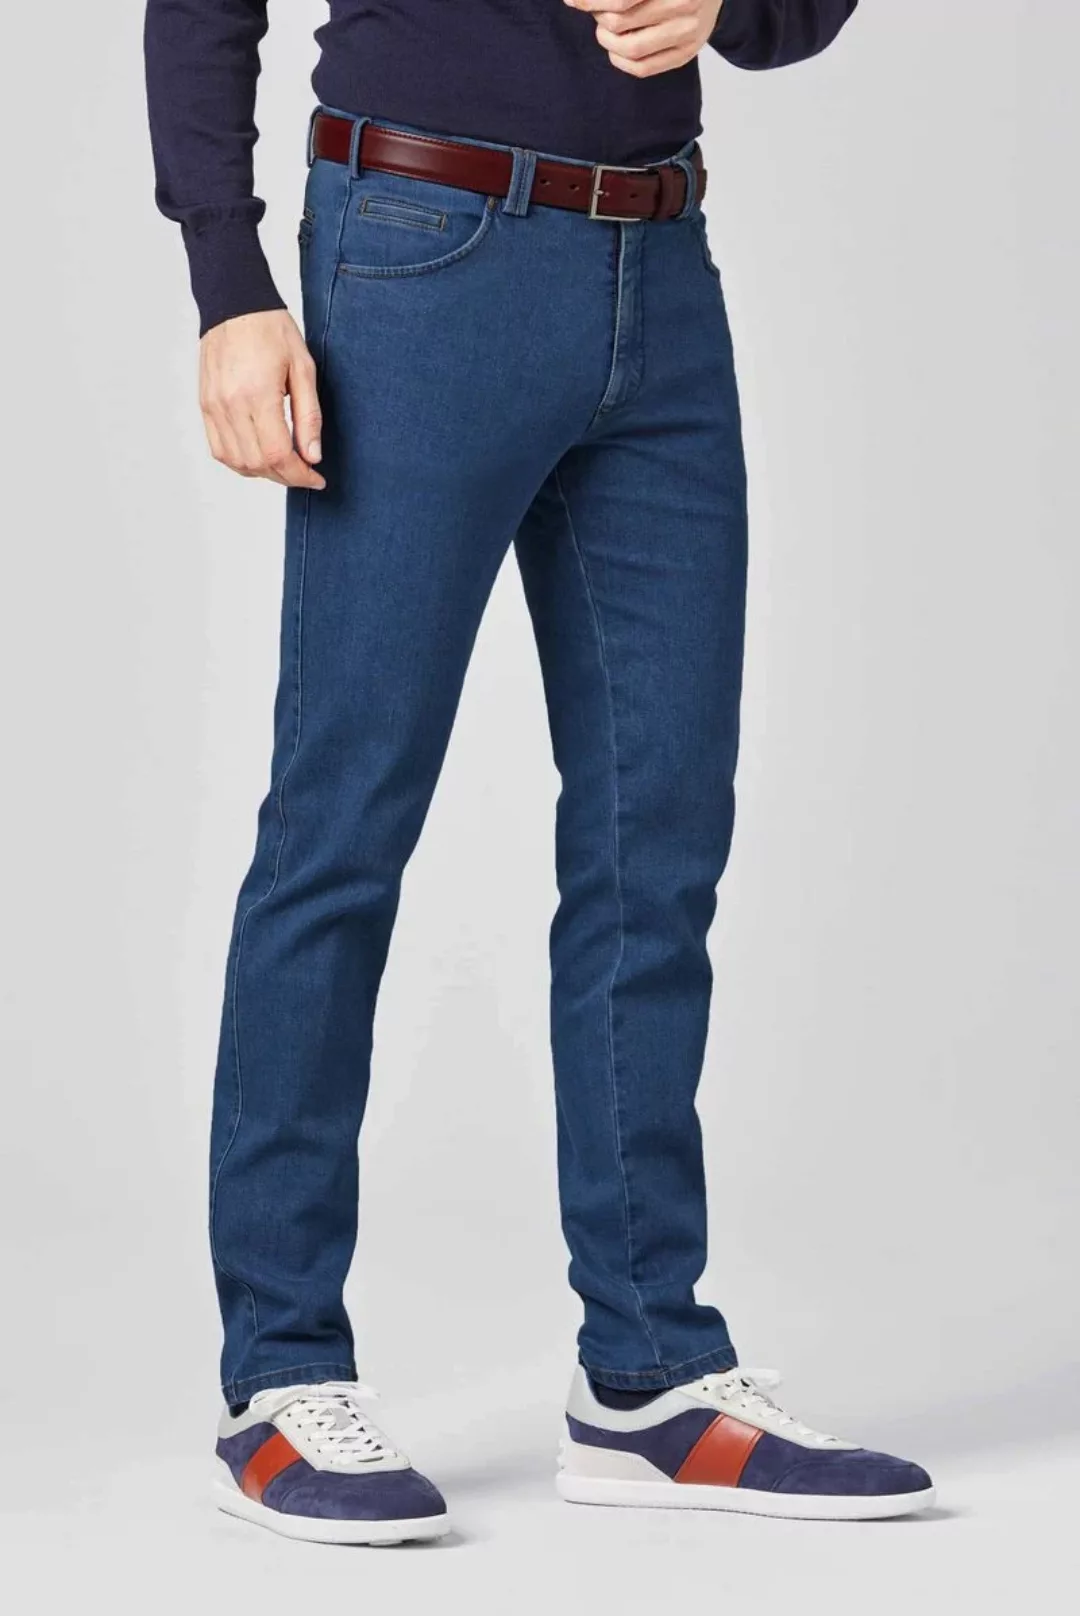 Meyer Jeans Dublin Blau - Größe 28 günstig online kaufen